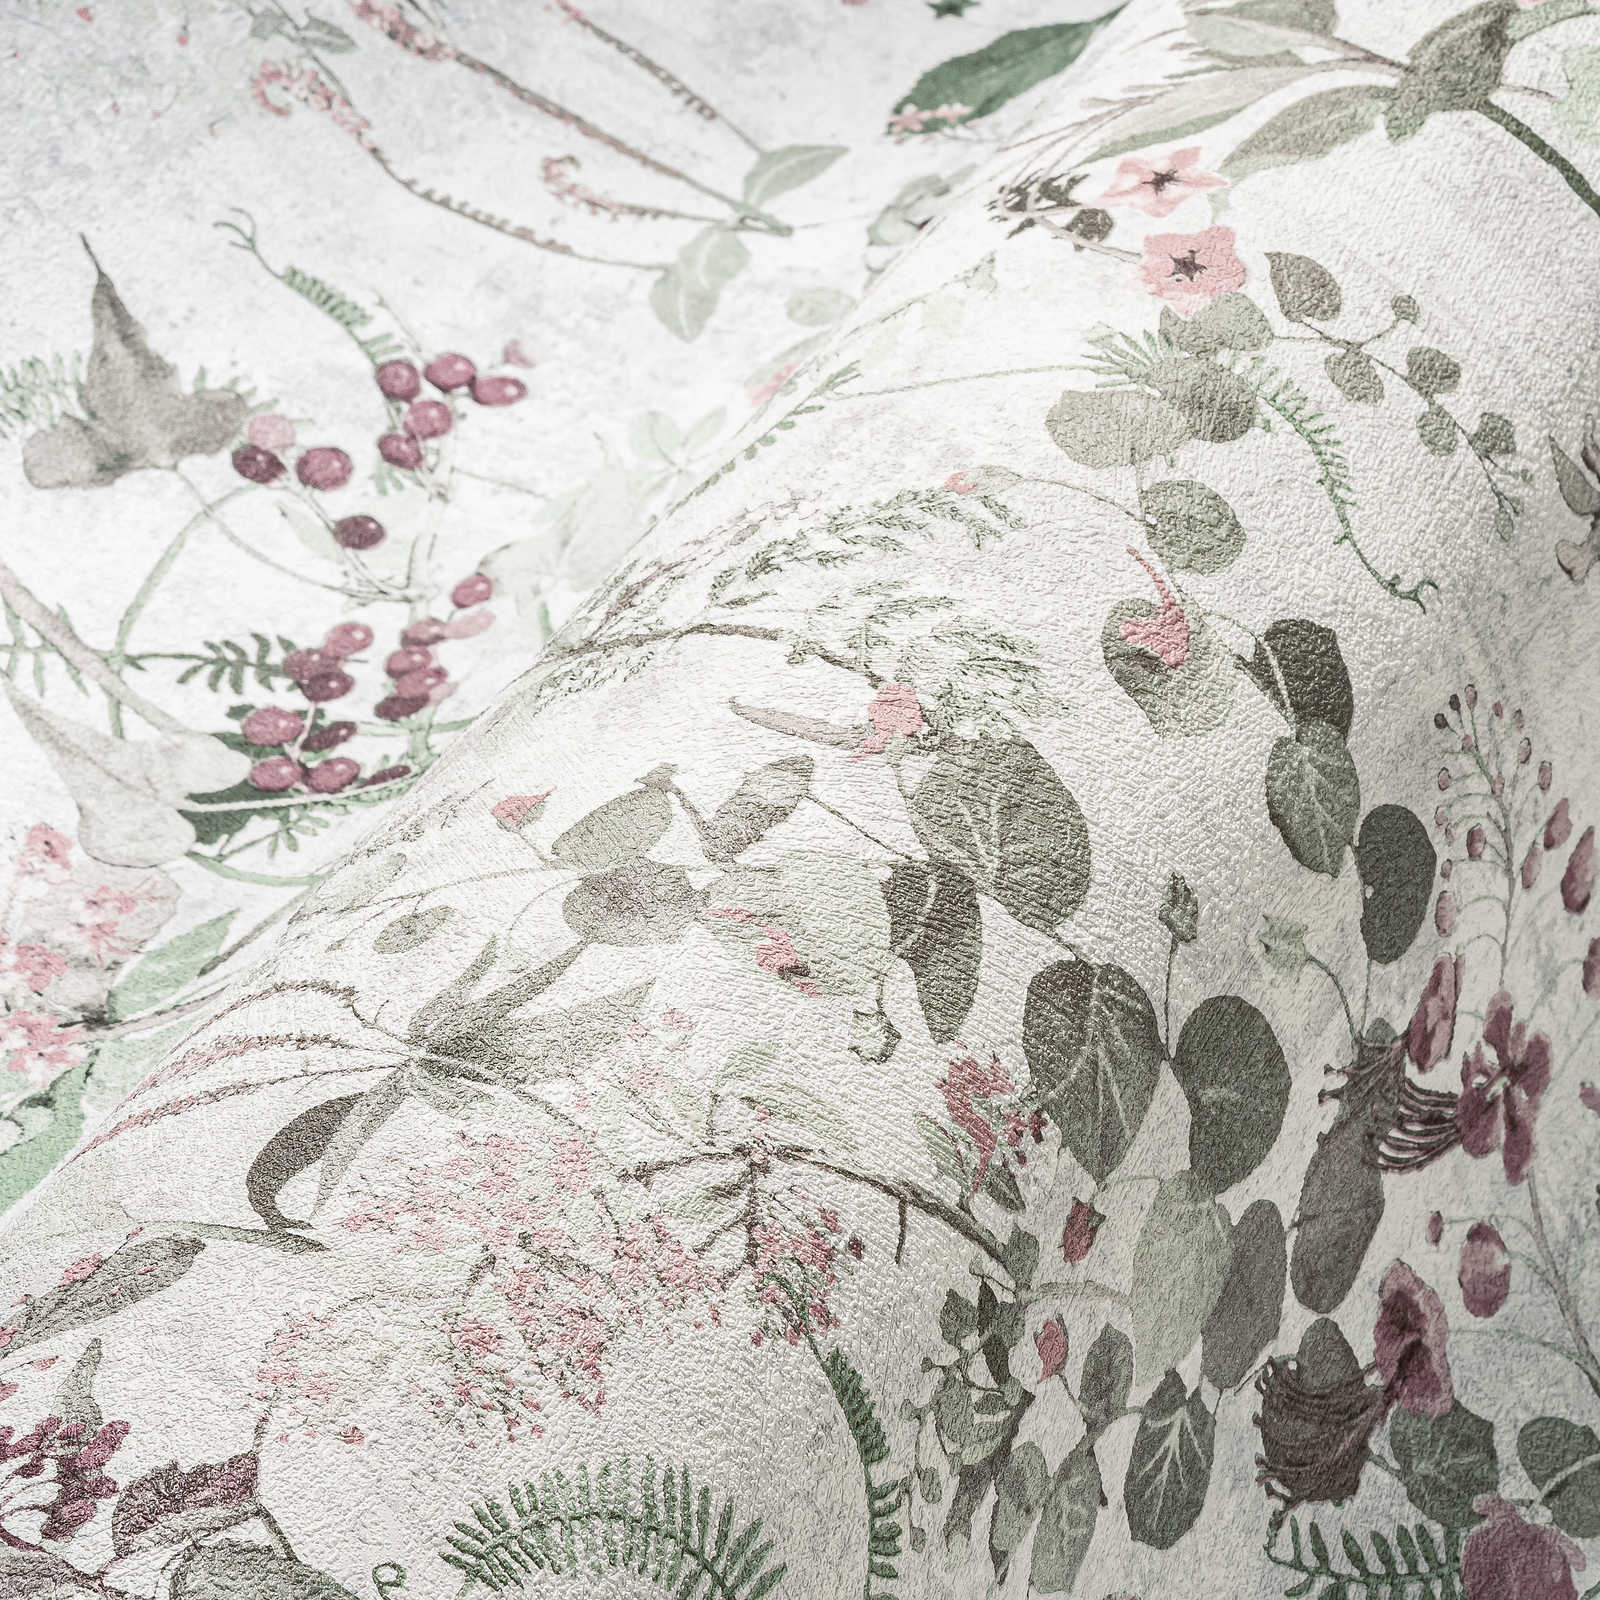             Papel pintado de naturaleza con motivos florales - gris, verde, rosa
        